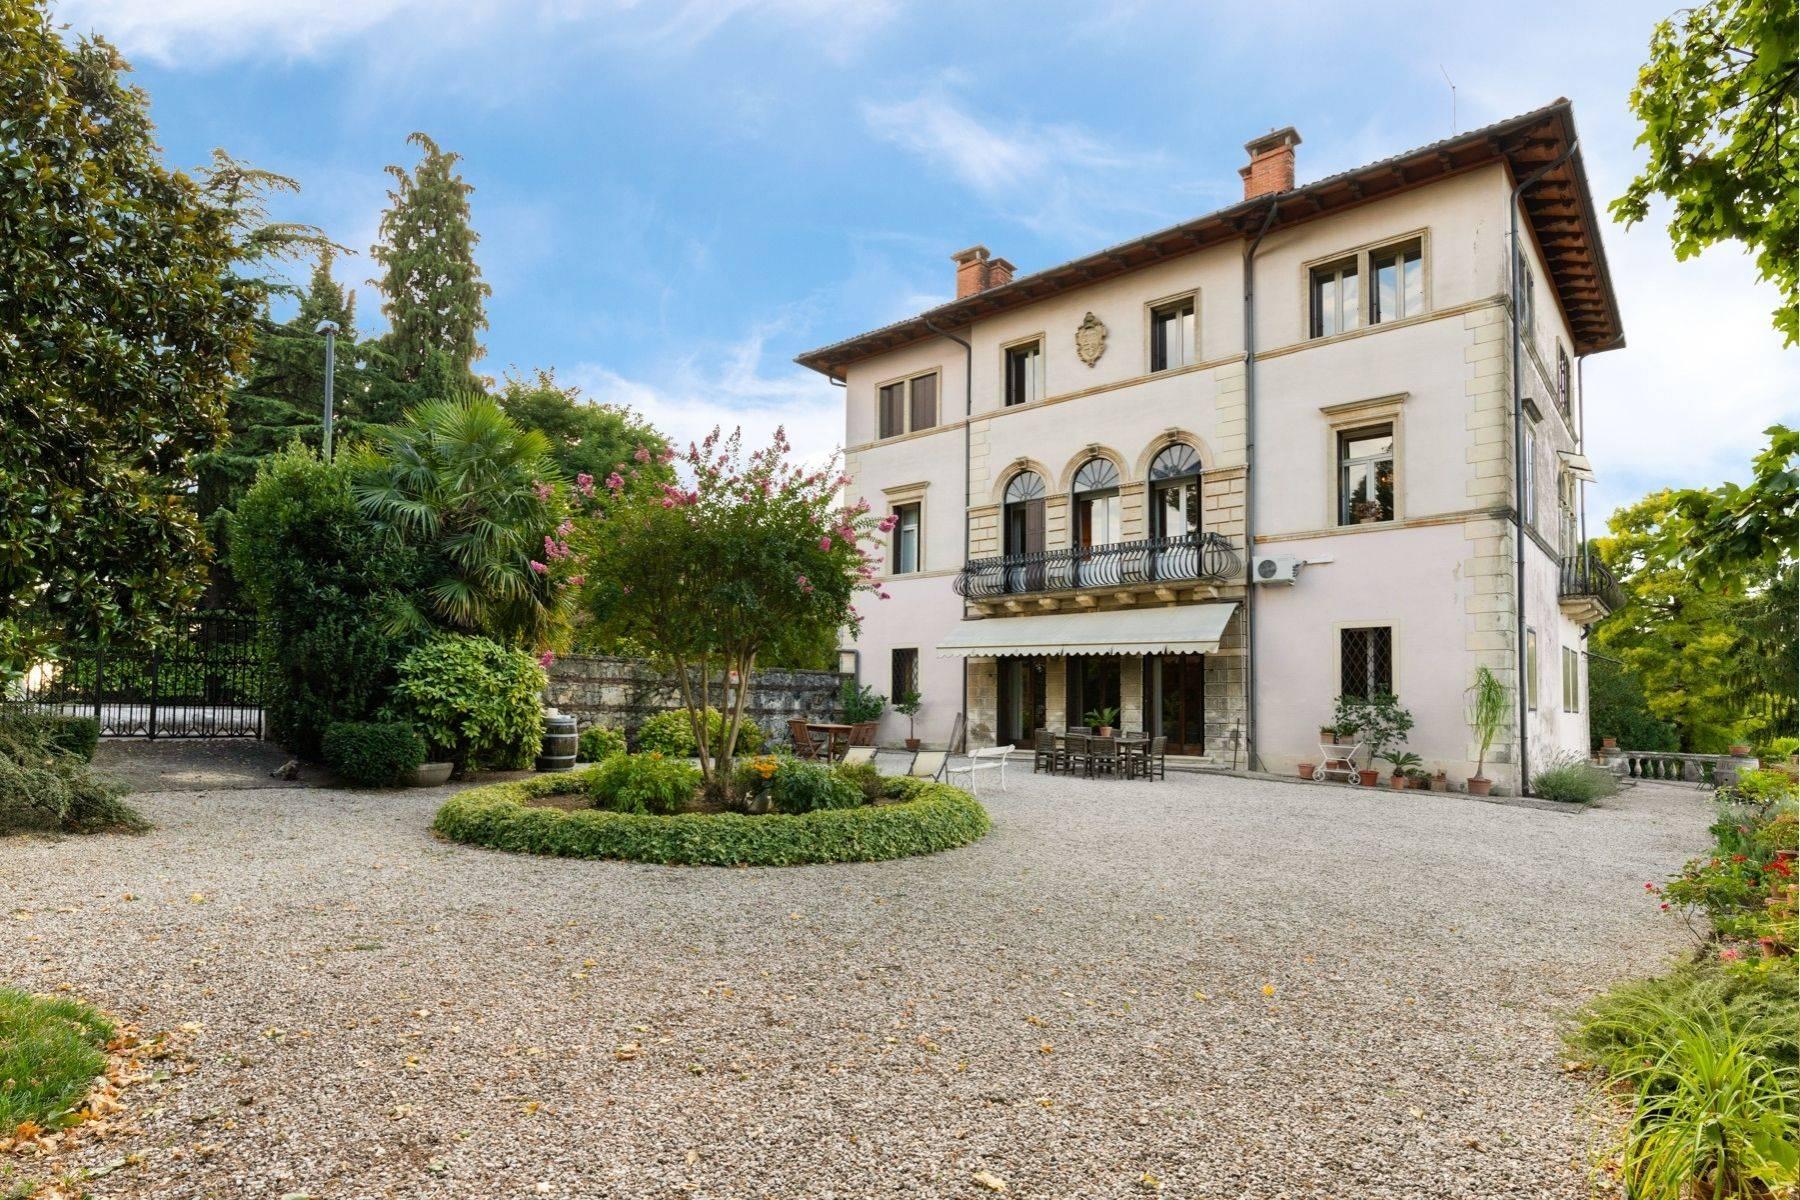 Elegante historische Villa mit privatem Park auf dem Monte Berico - 1